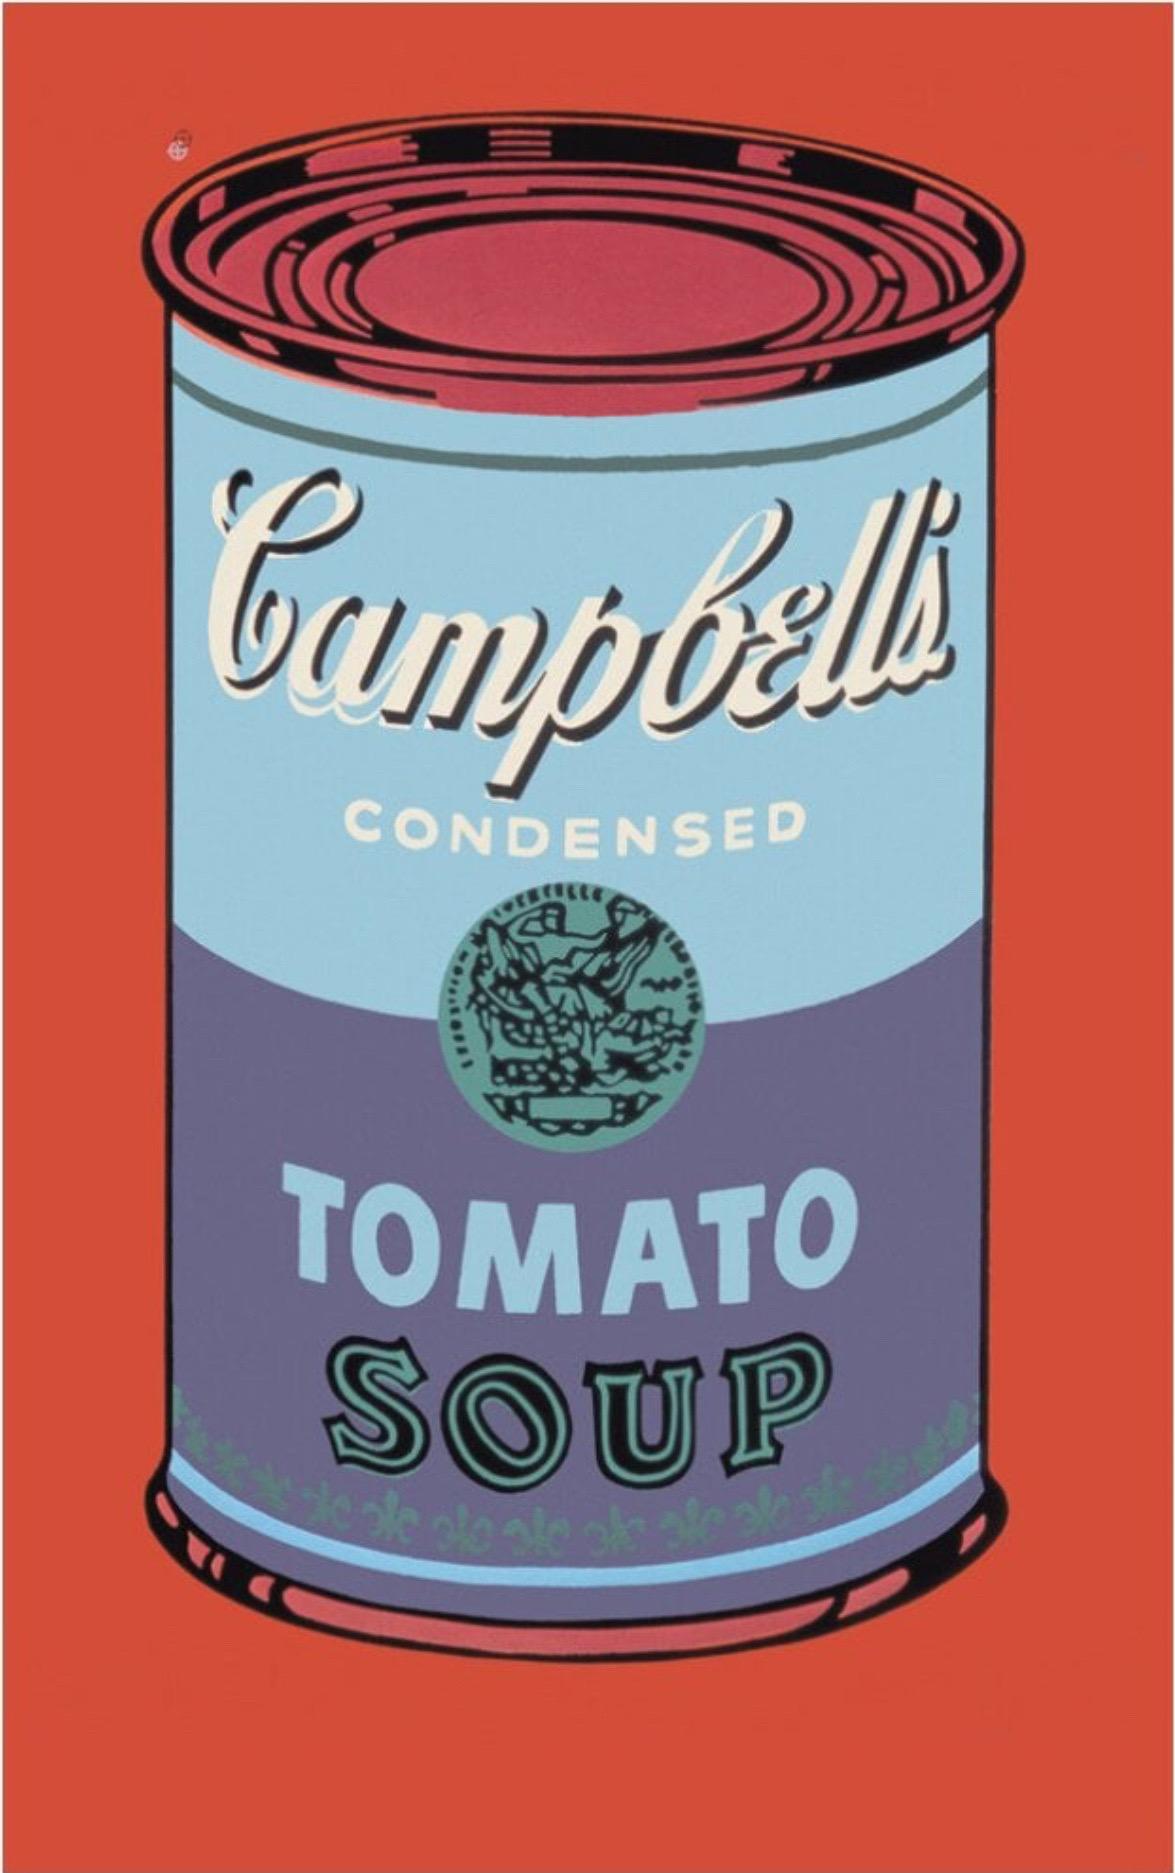 Andy Warhol, Campbell's Soup Can, 1965 (blau & lila)

Mattes 250 g/m² konserviertes Digitalpapier

Papierformat 60 x 100 cm (23,62 x 39,37 Zoll) 
Bildgröße 59 x 99 cm (23,22 x 38,97 Zoll) 

Die Campbell's Soup Cans von Andy Warhol gehören zu den